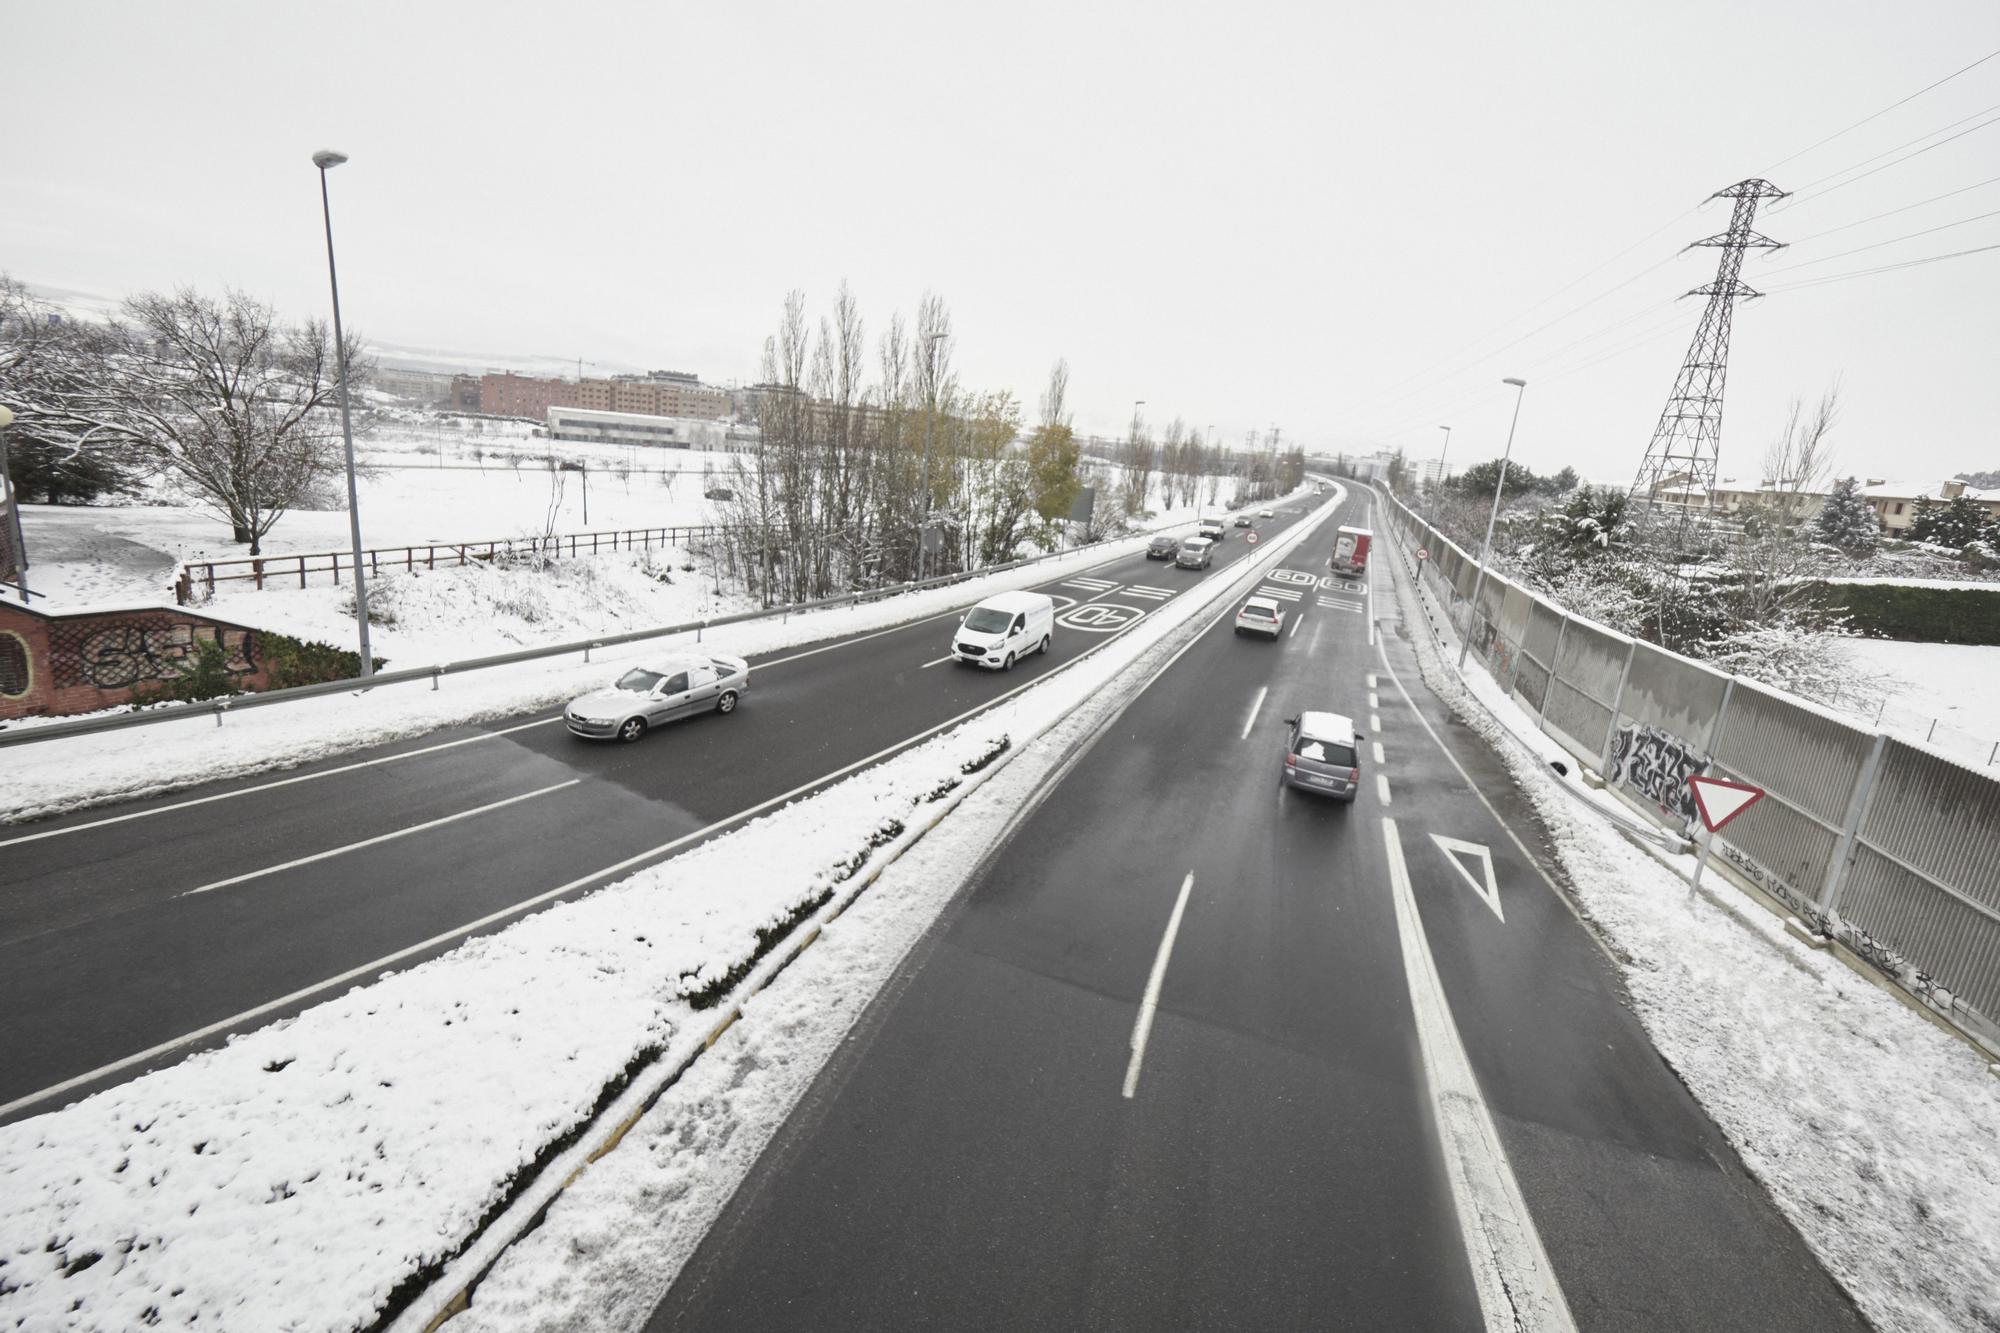 Varios coches circulan por una carretera con los laterales cubiertos de nieve, a 19 de enero de 2023, en Pamplona, Navarra (España). La Agencia Estatal de Meteorología (Aemet) mantiene la alerta naranja por acumulación de nieve en Navarra. Pamplona ha ama